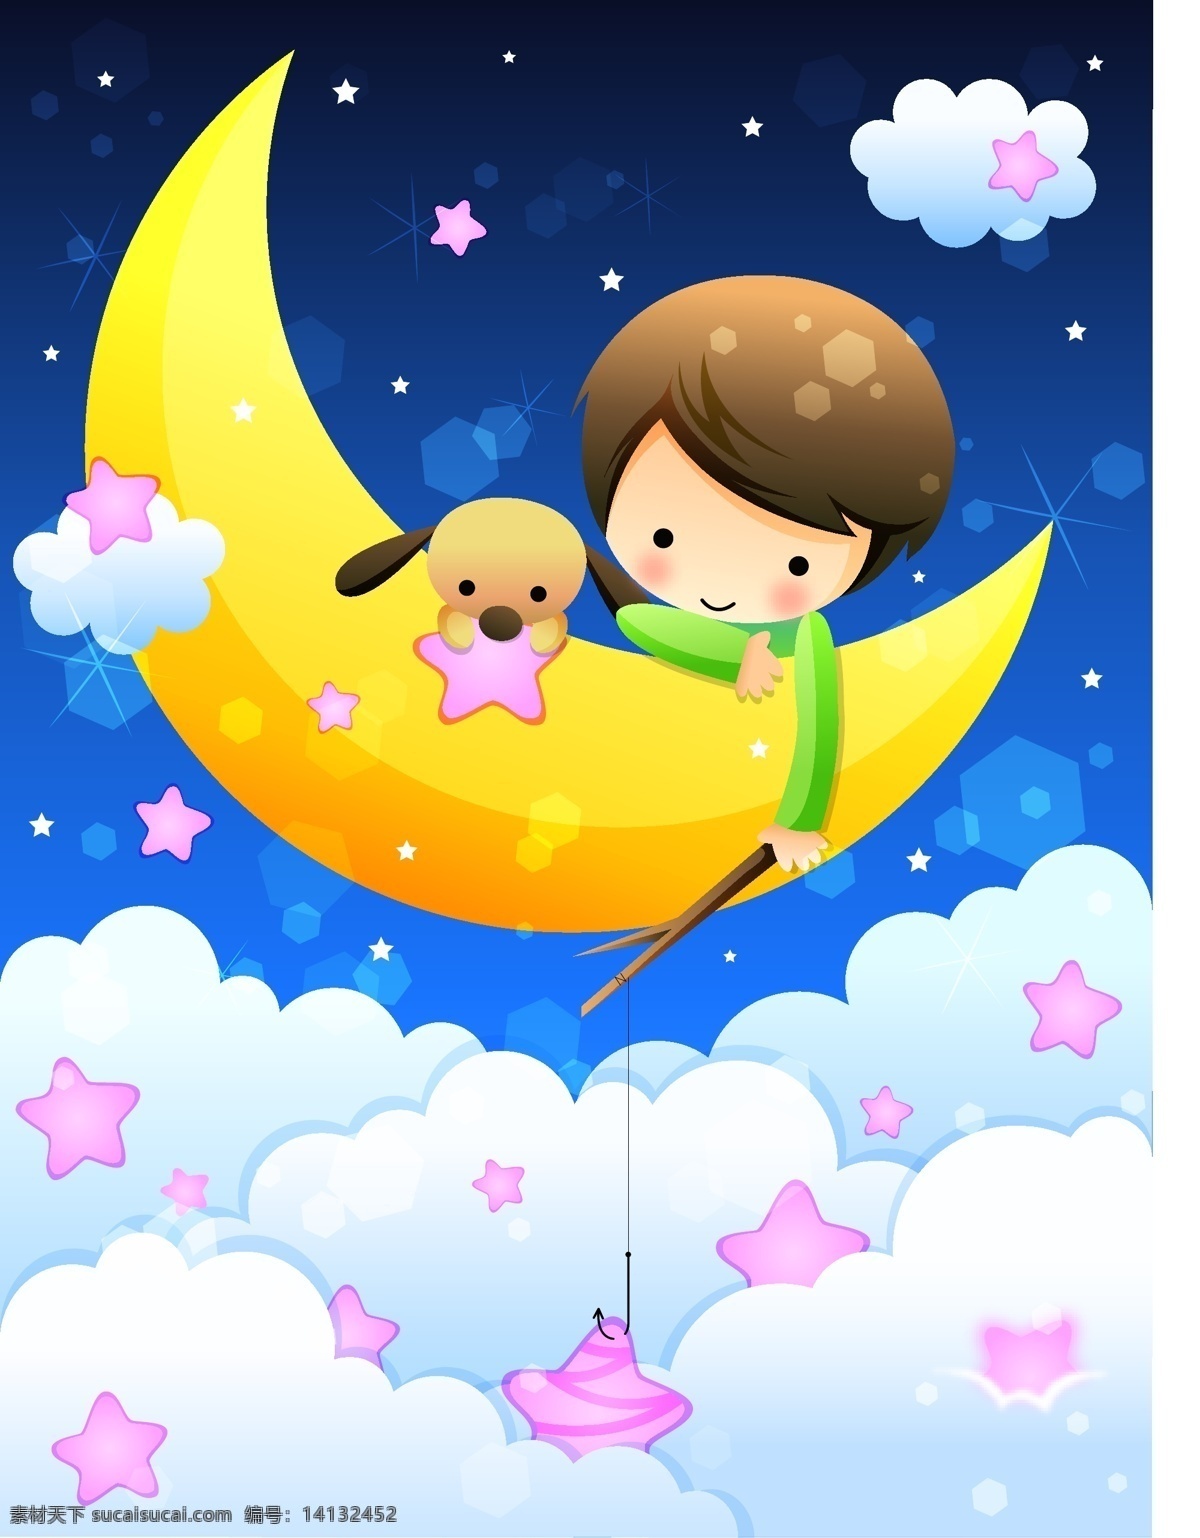 韩国 儿童节 矢量图 源码 韩国儿童 模板 设计稿 星星 源文件 云彩 月亮 节日大全 节日素材